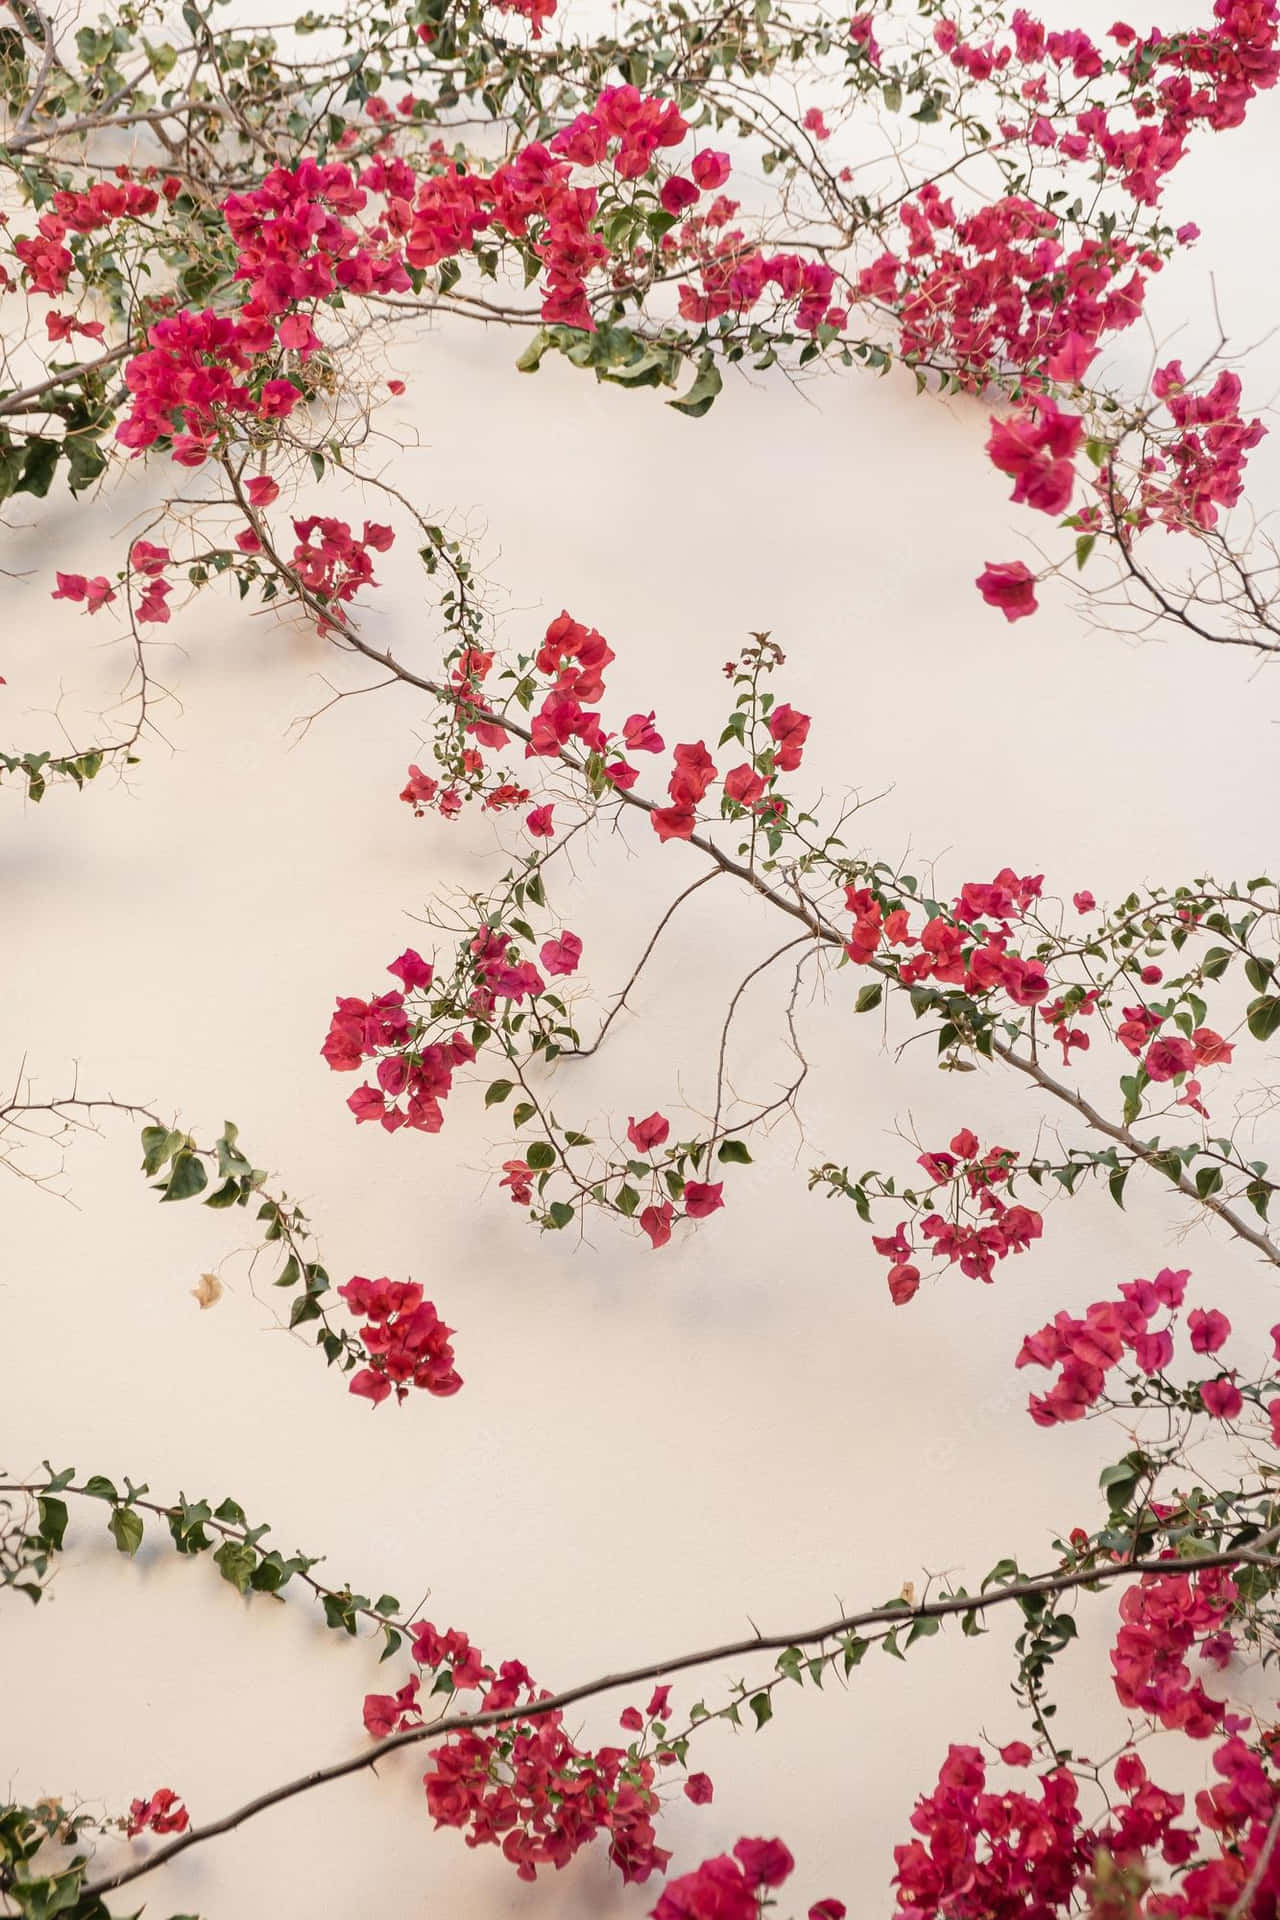 Eineschöne Rote Blume Für Eine Erfrischende Ästhetik Wallpaper